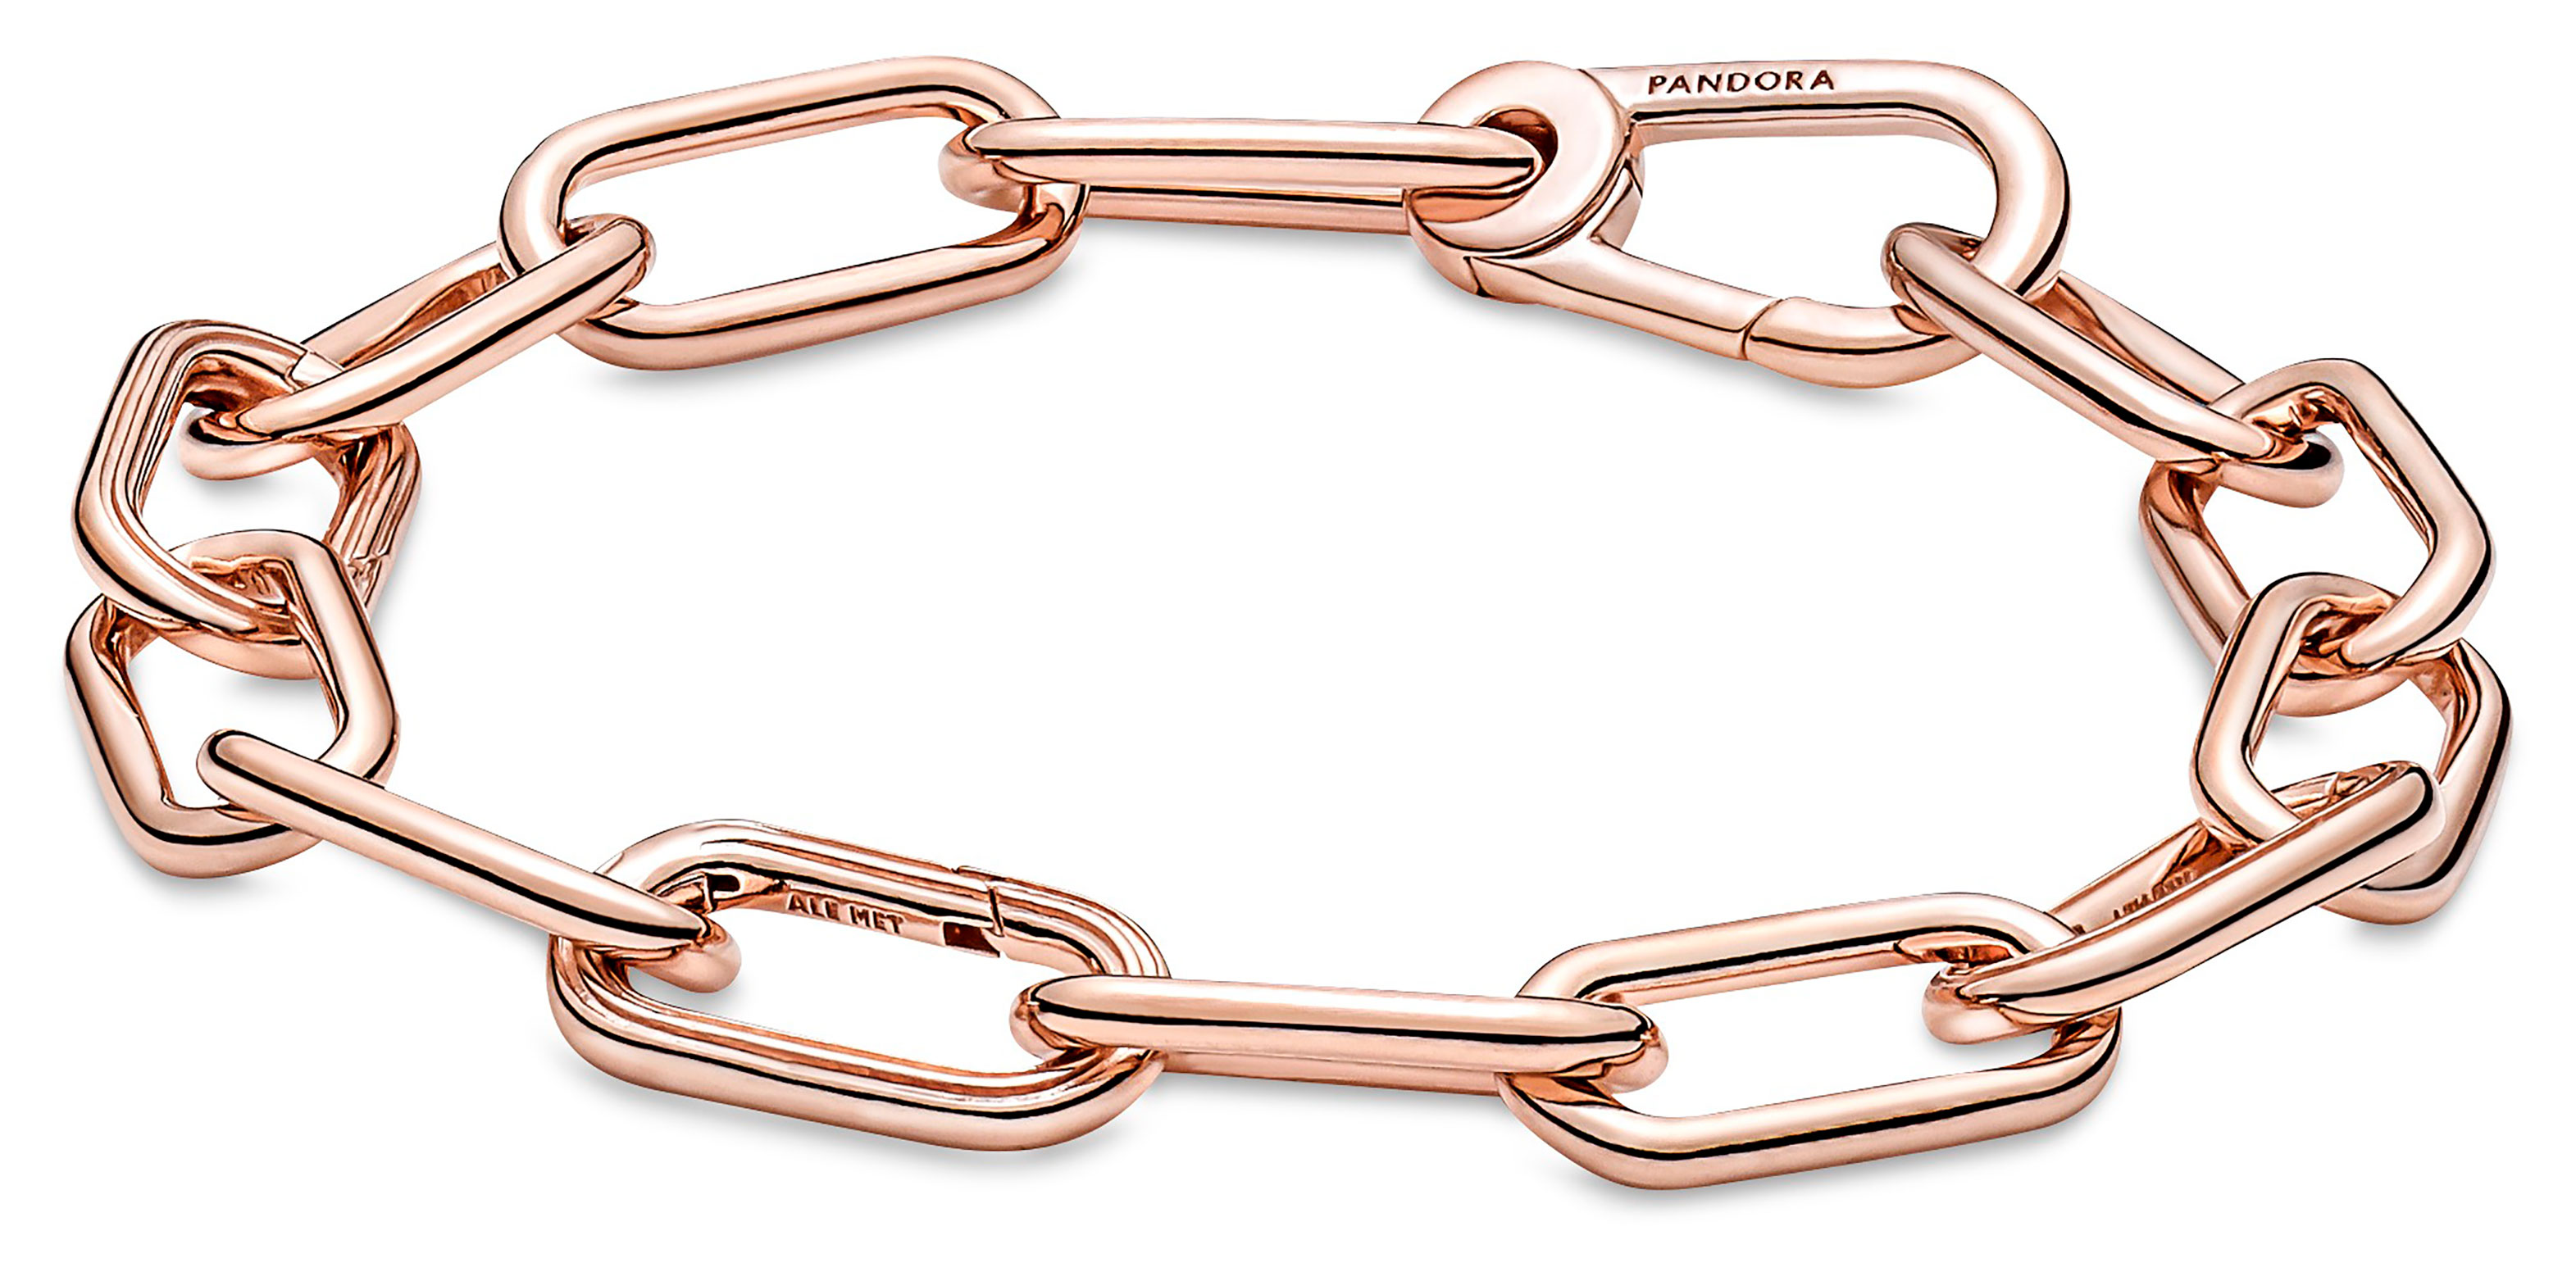 Extra Thin Safety Chain Bracelet Rose Gold – EDDIE BORGO